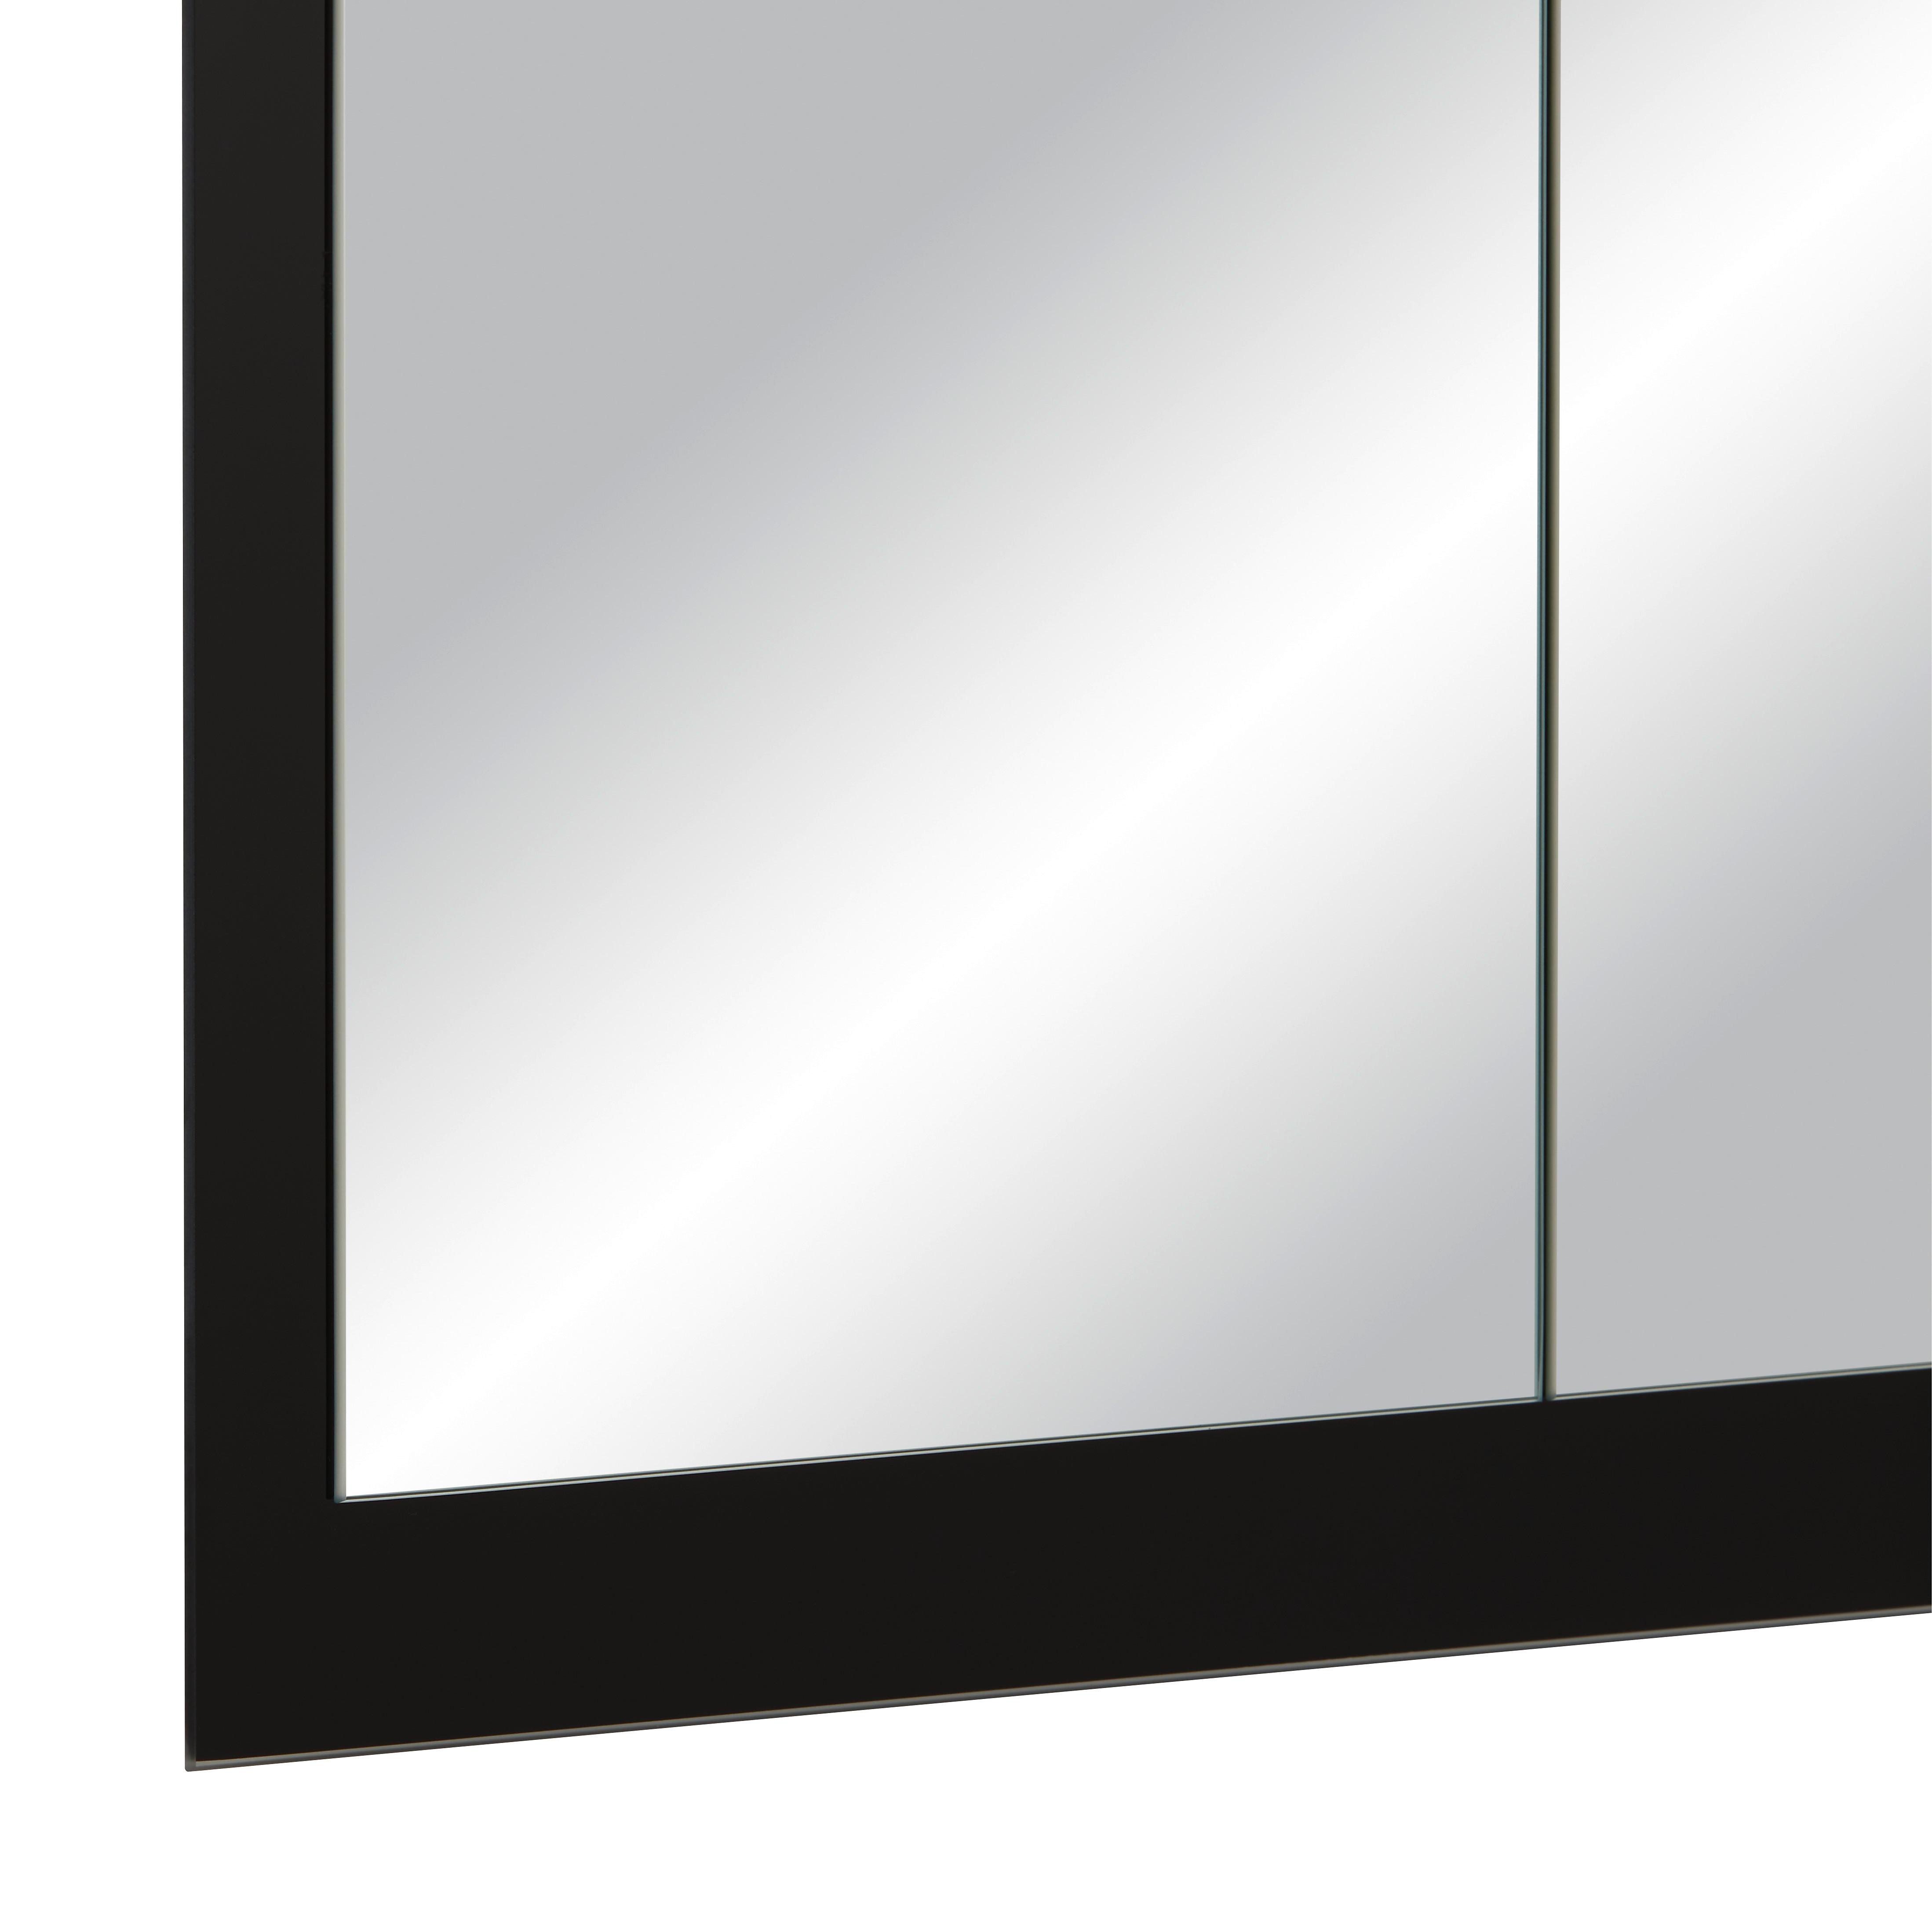 Nástěnné Zrcadlo Industrial I -Exklusiv- - černá, Moderní, sklo (64/104cm) - Modern Living